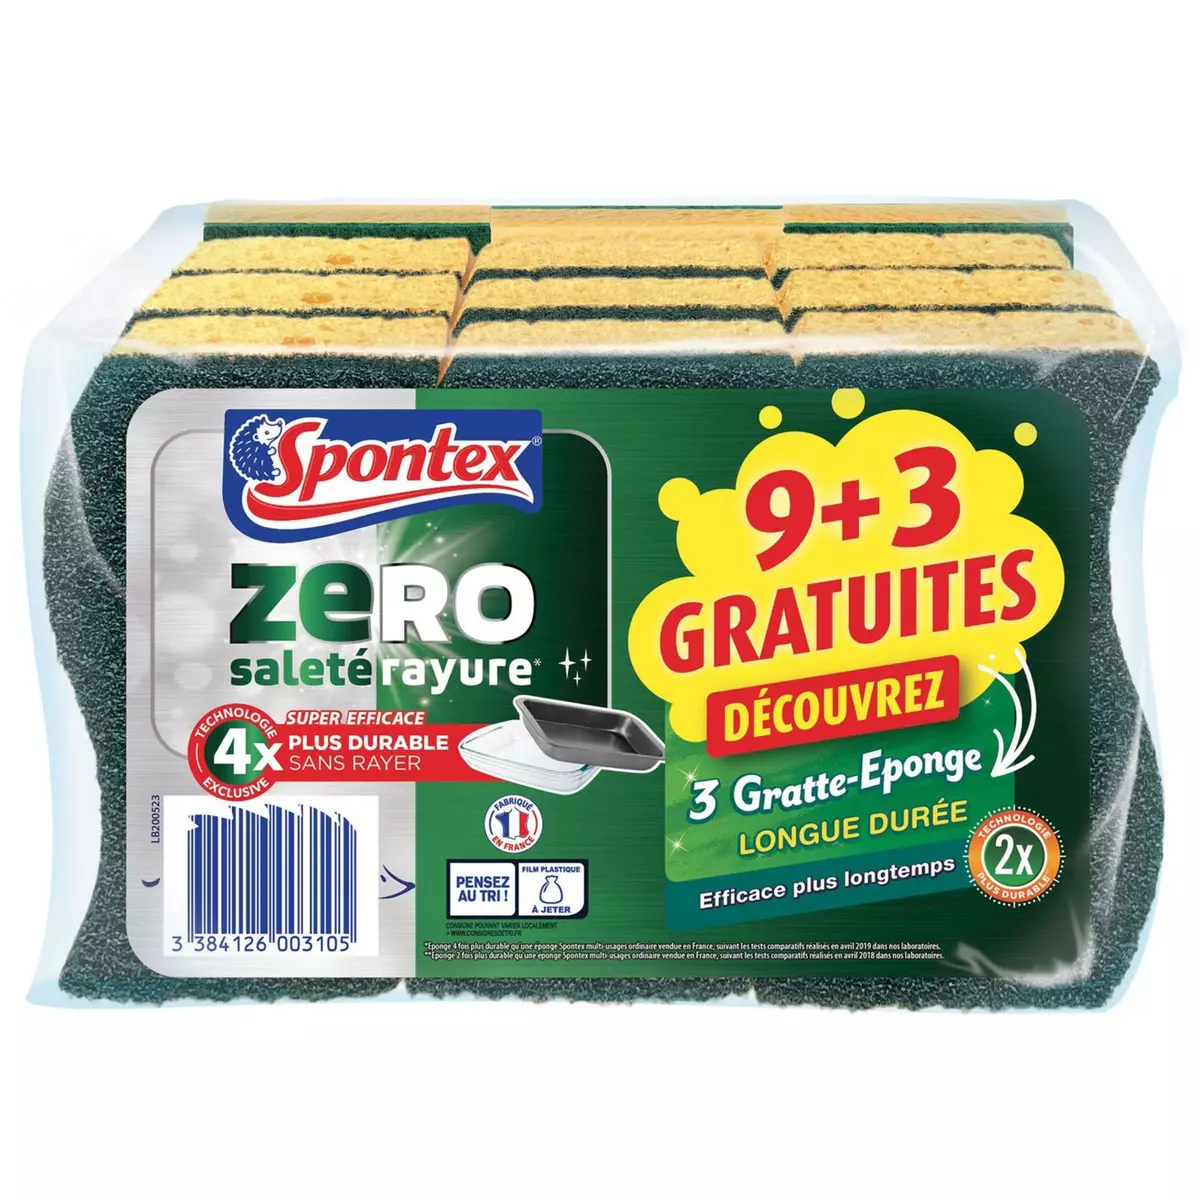 SPONTEX ZERO SURFACES ENCRASSEES 9 + 3 GE LONGUE DUREE GRATUITES 9+3 offerts